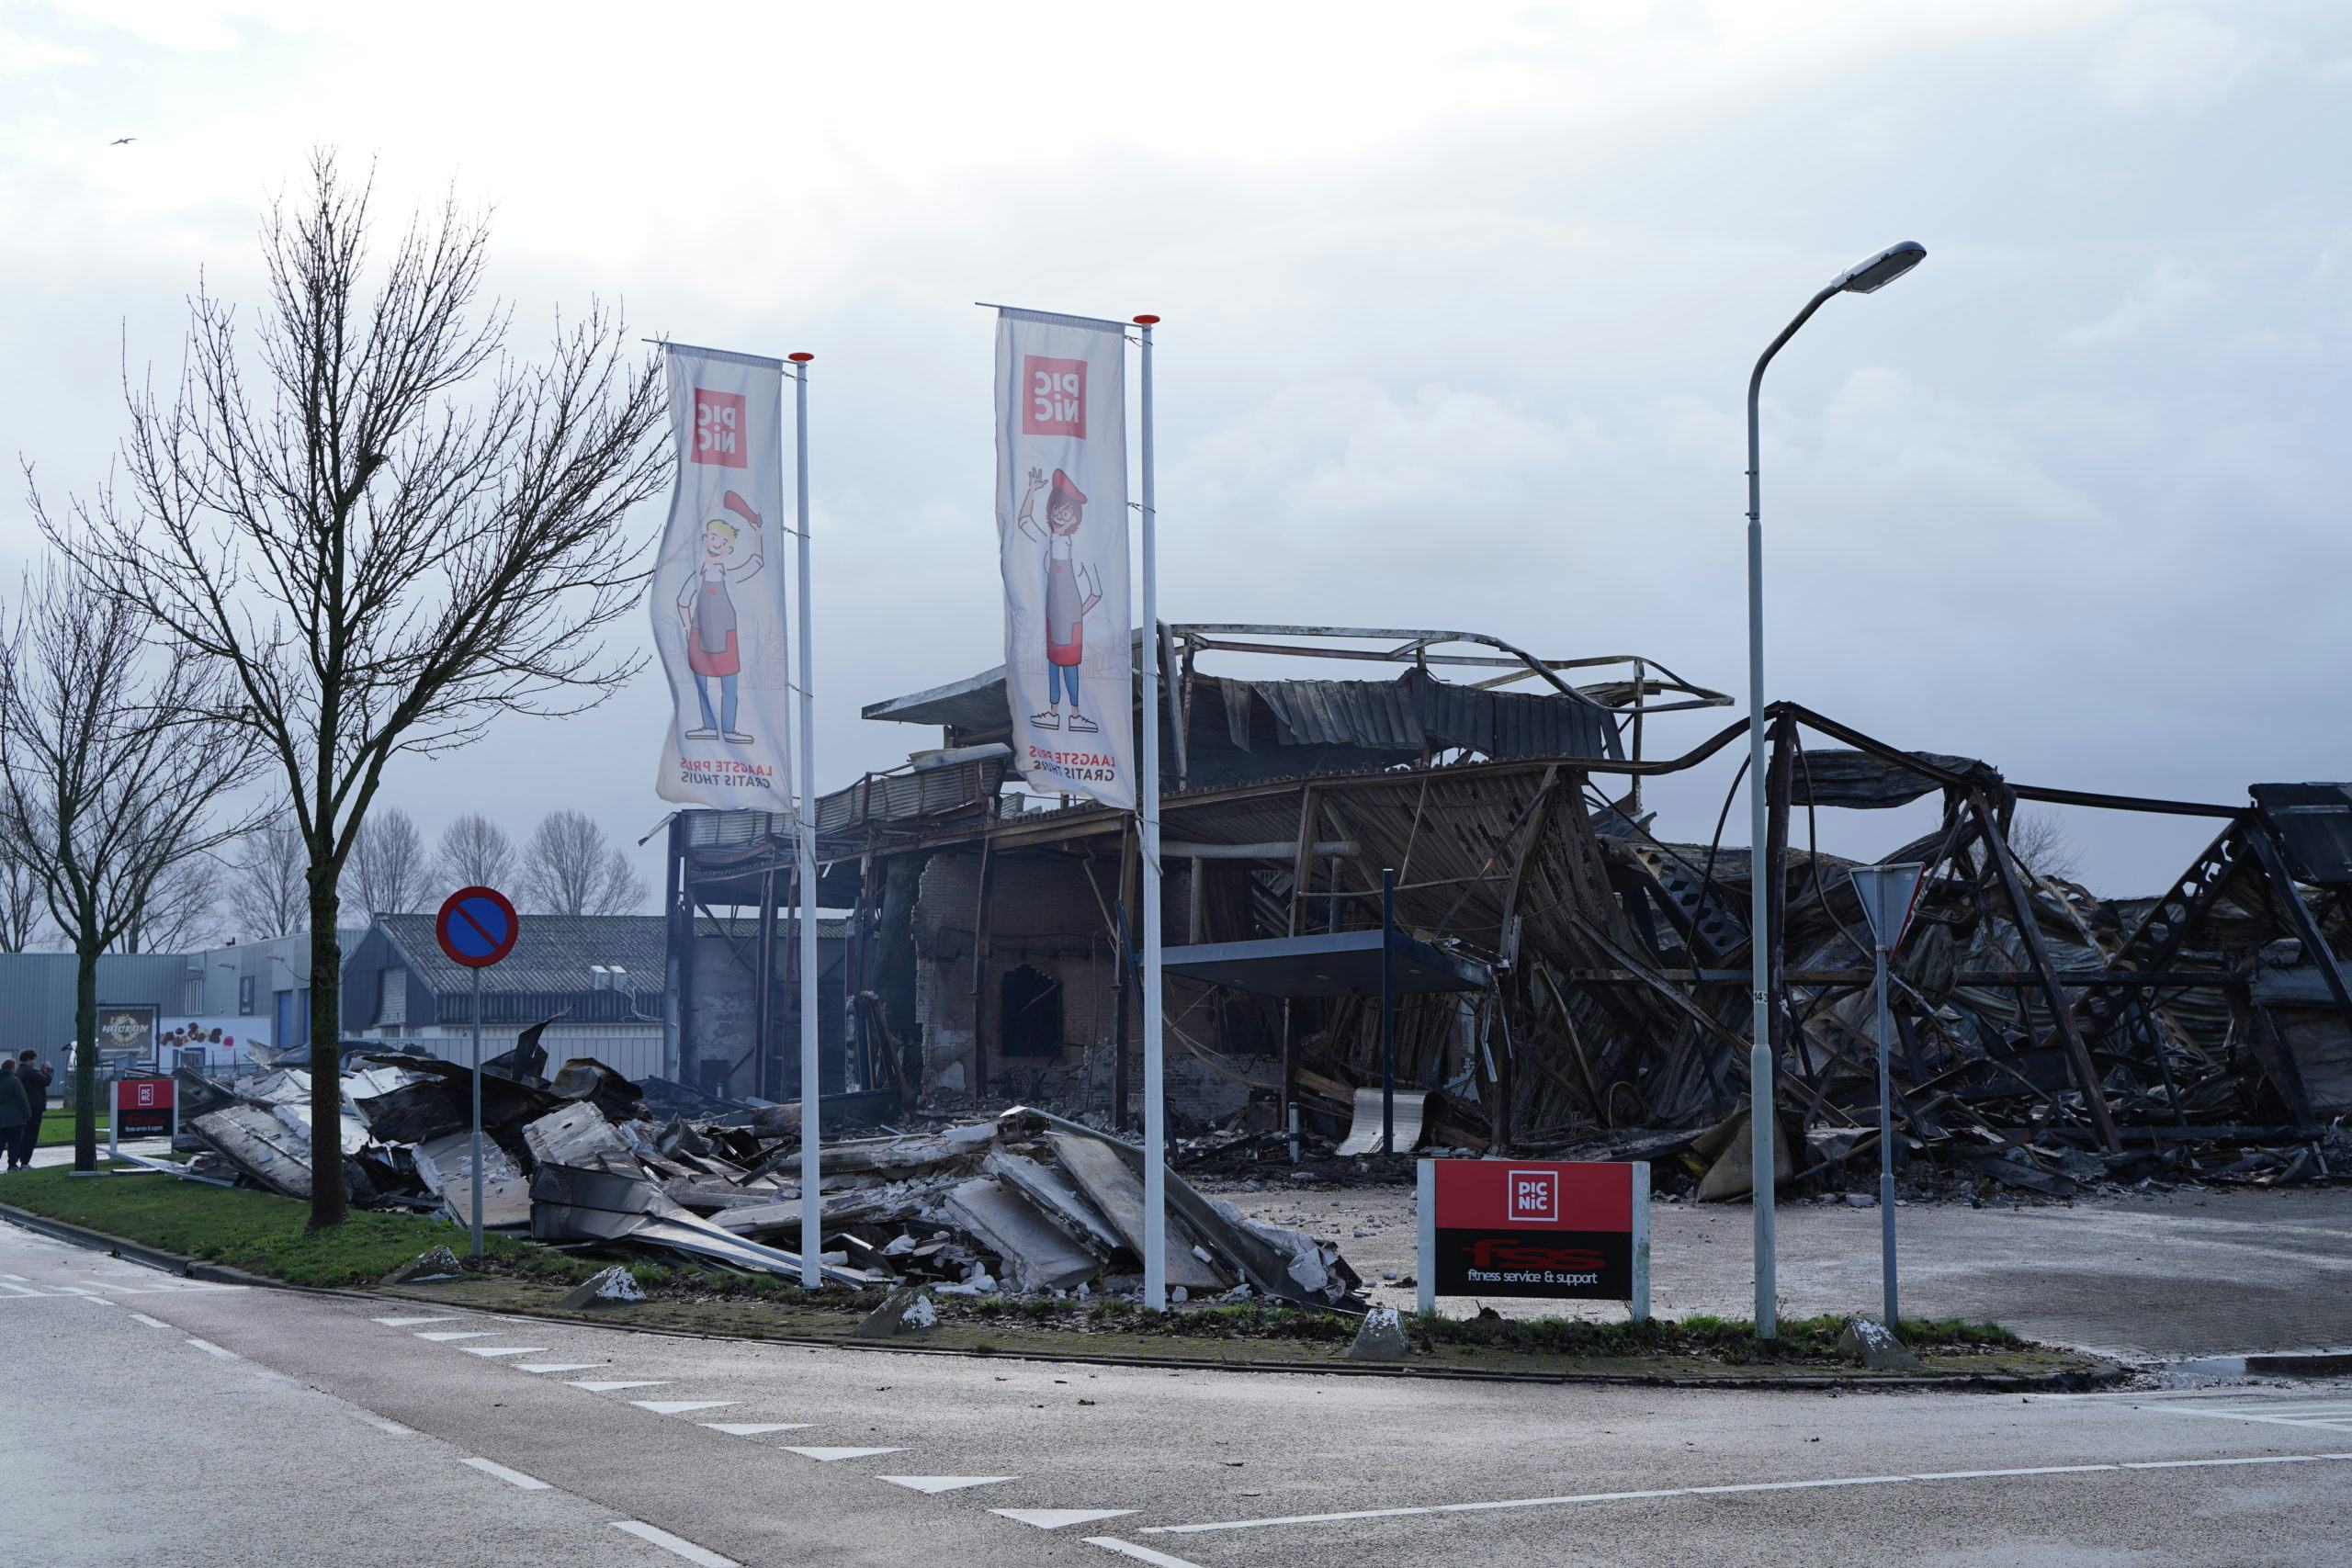 De hub na de brand in Roosendaal. Archieffoto: ANP